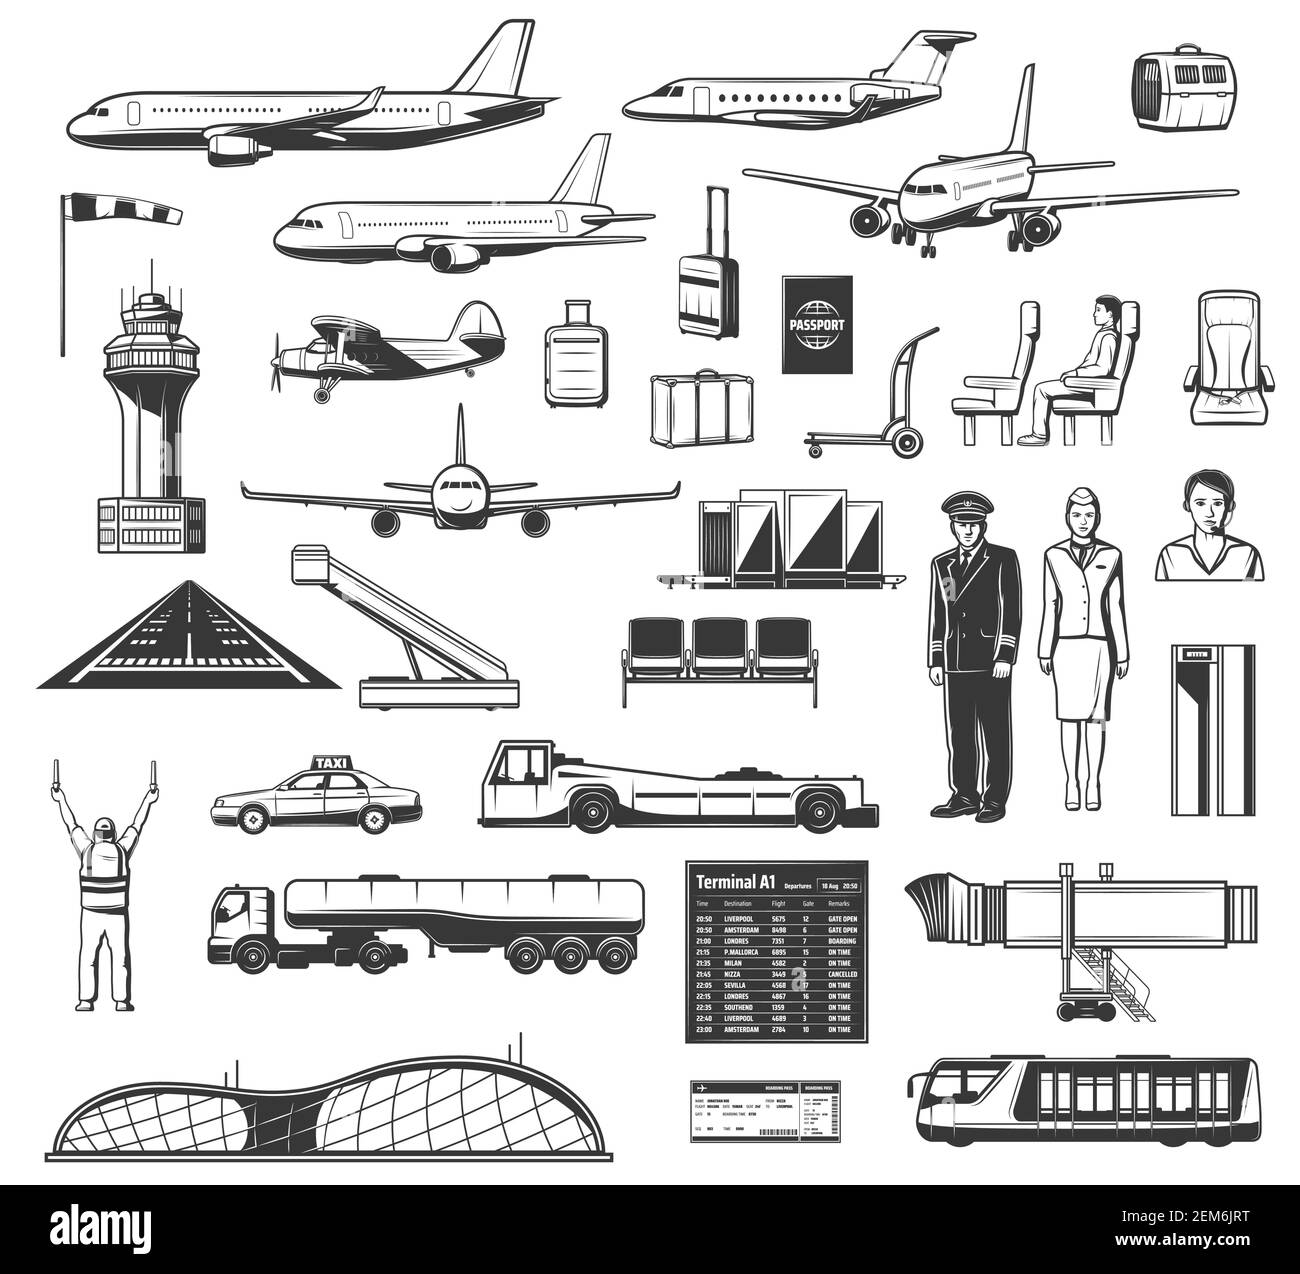 Icone di vettori aerei, attrezzature aeroportuali e personale delle compagnie aeree. Biglietti aerei, passaporto e controllo di sicurezza, orari e biglietti dei voli, passeggeri Illustrazione Vettoriale